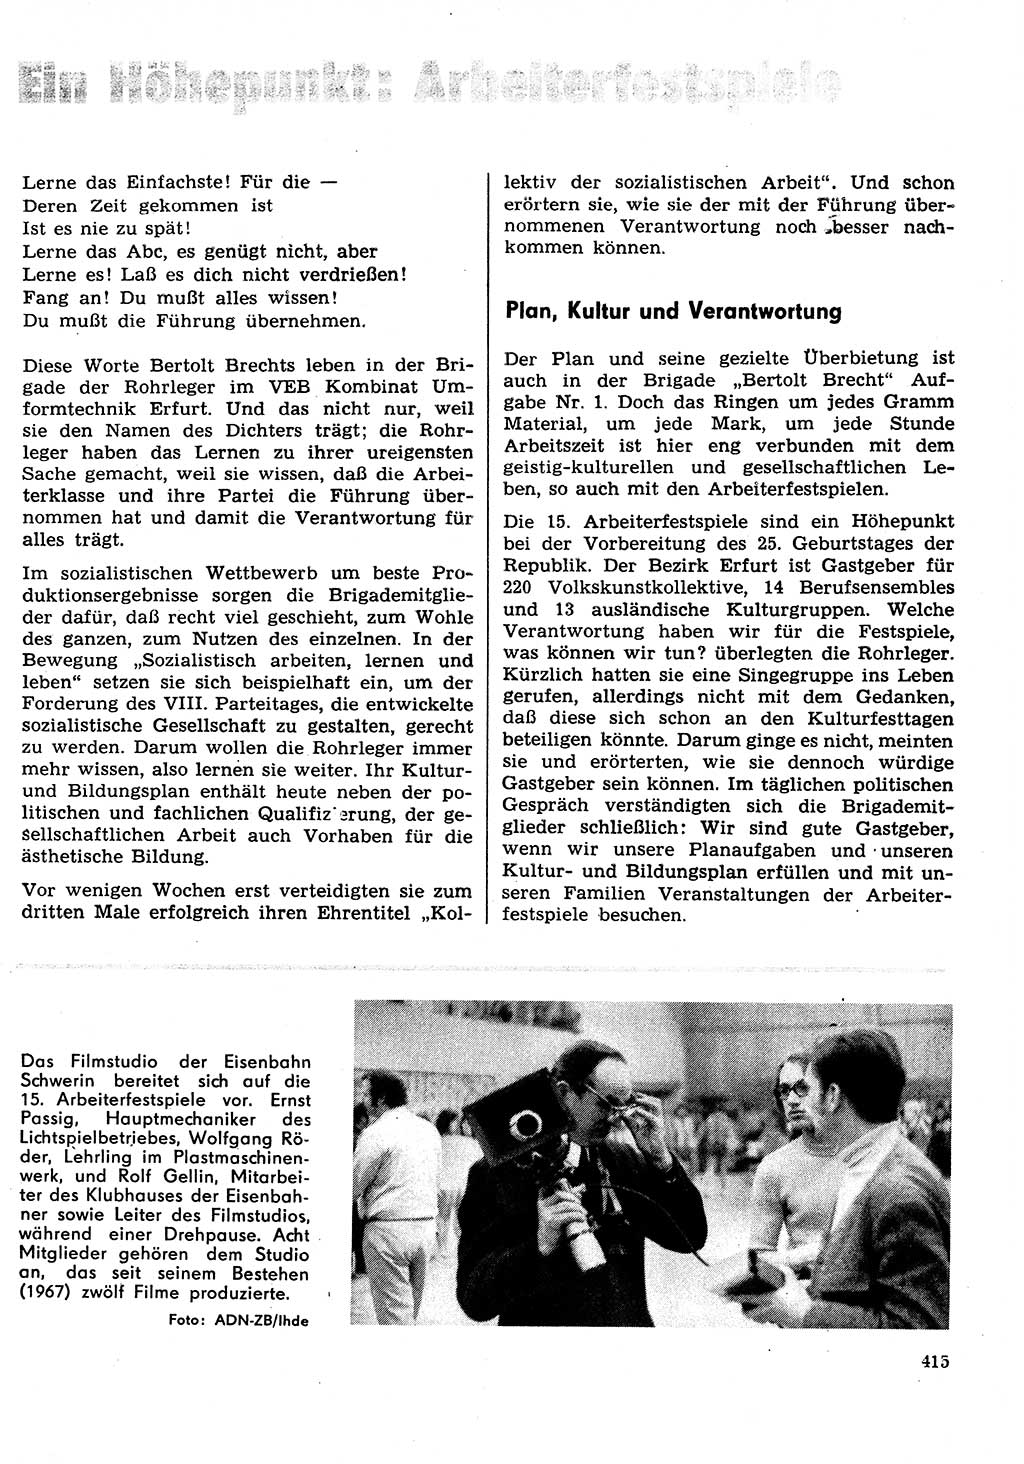 Neuer Weg (NW), Organ des Zentralkomitees (ZK) der SED (Sozialistische Einheitspartei Deutschlands) für Fragen des Parteilebens, 29. Jahrgang [Deutsche Demokratische Republik (DDR)] 1974, Seite 415 (NW ZK SED DDR 1974, S. 415)